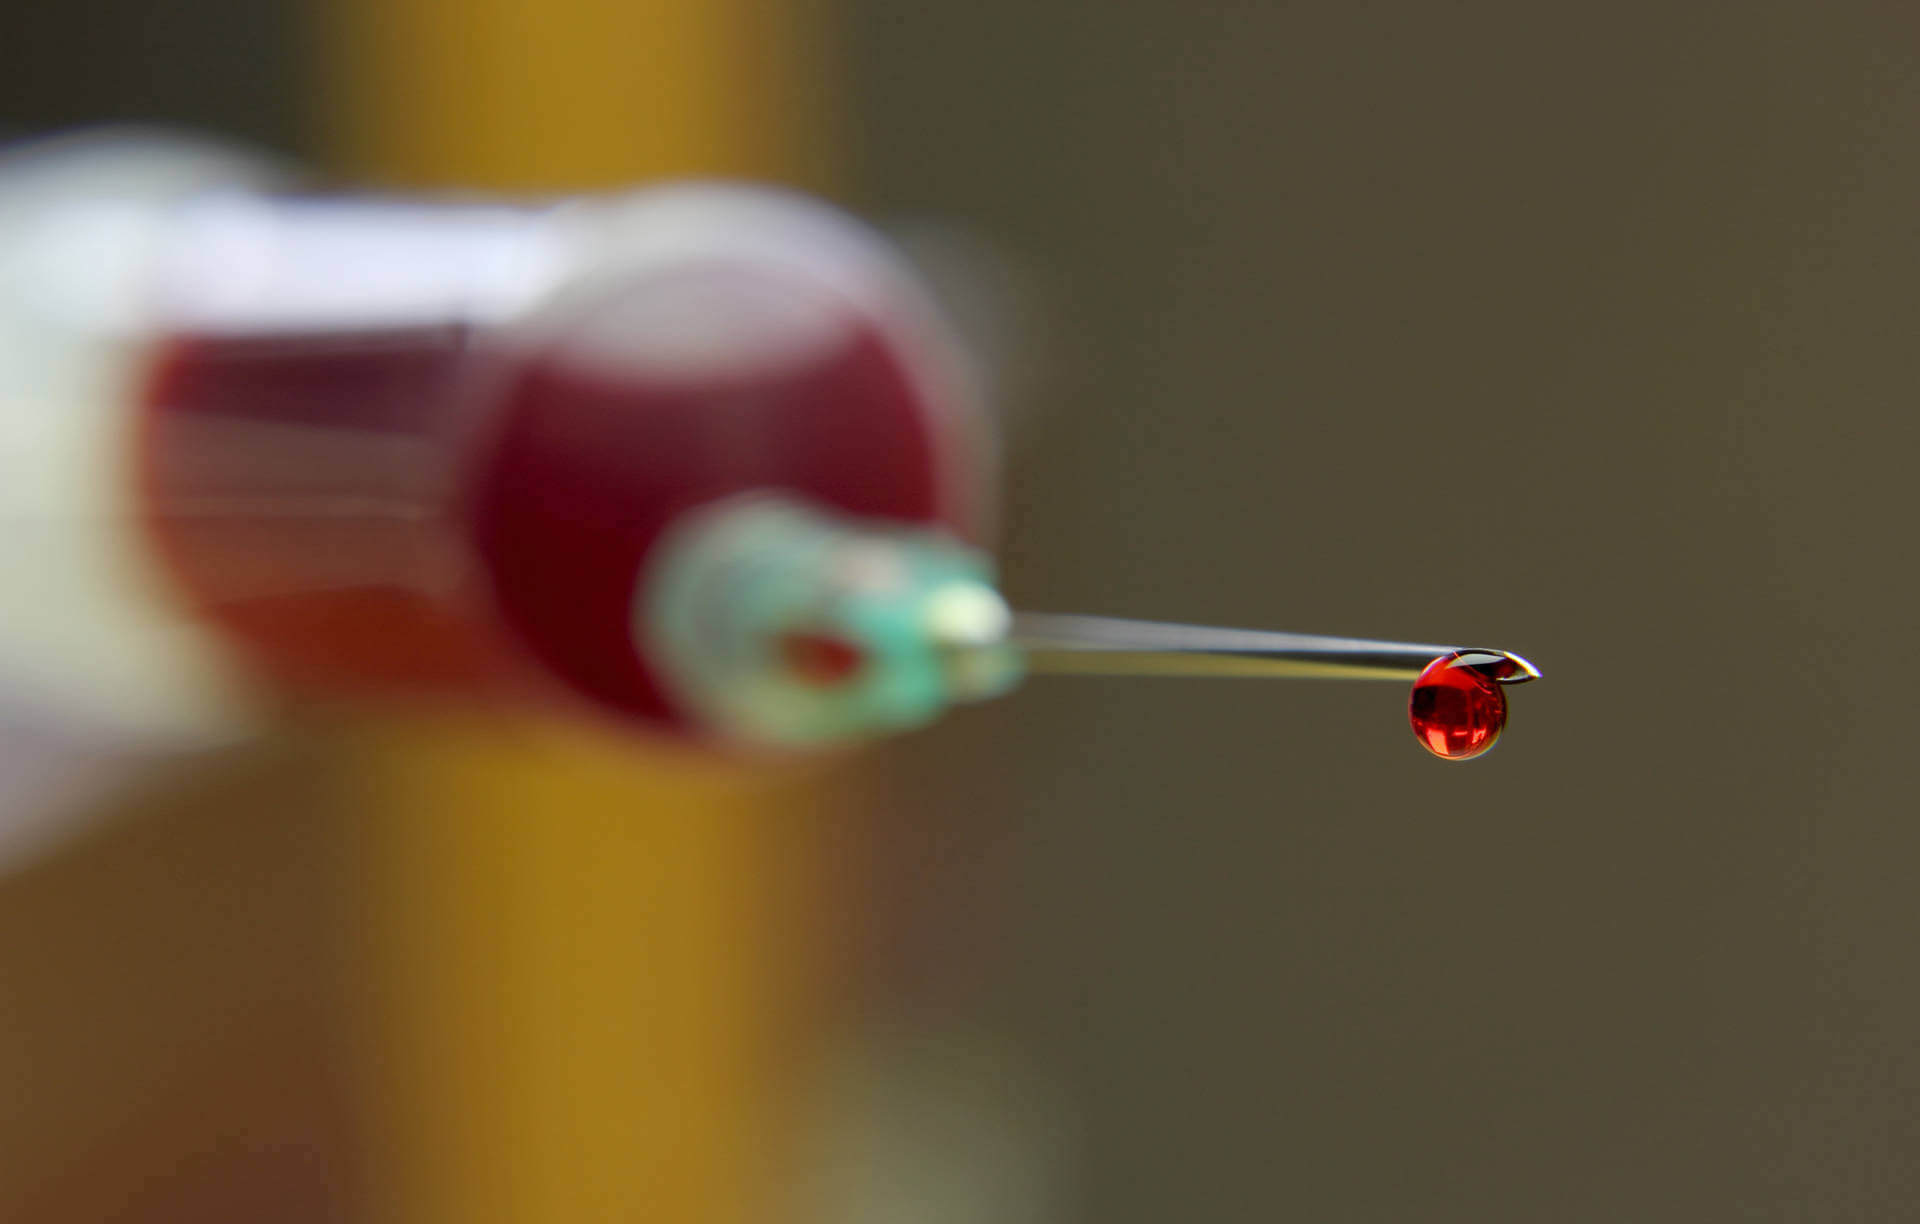 新的设备，从东芝一滴血揭示了13种类型的癌症